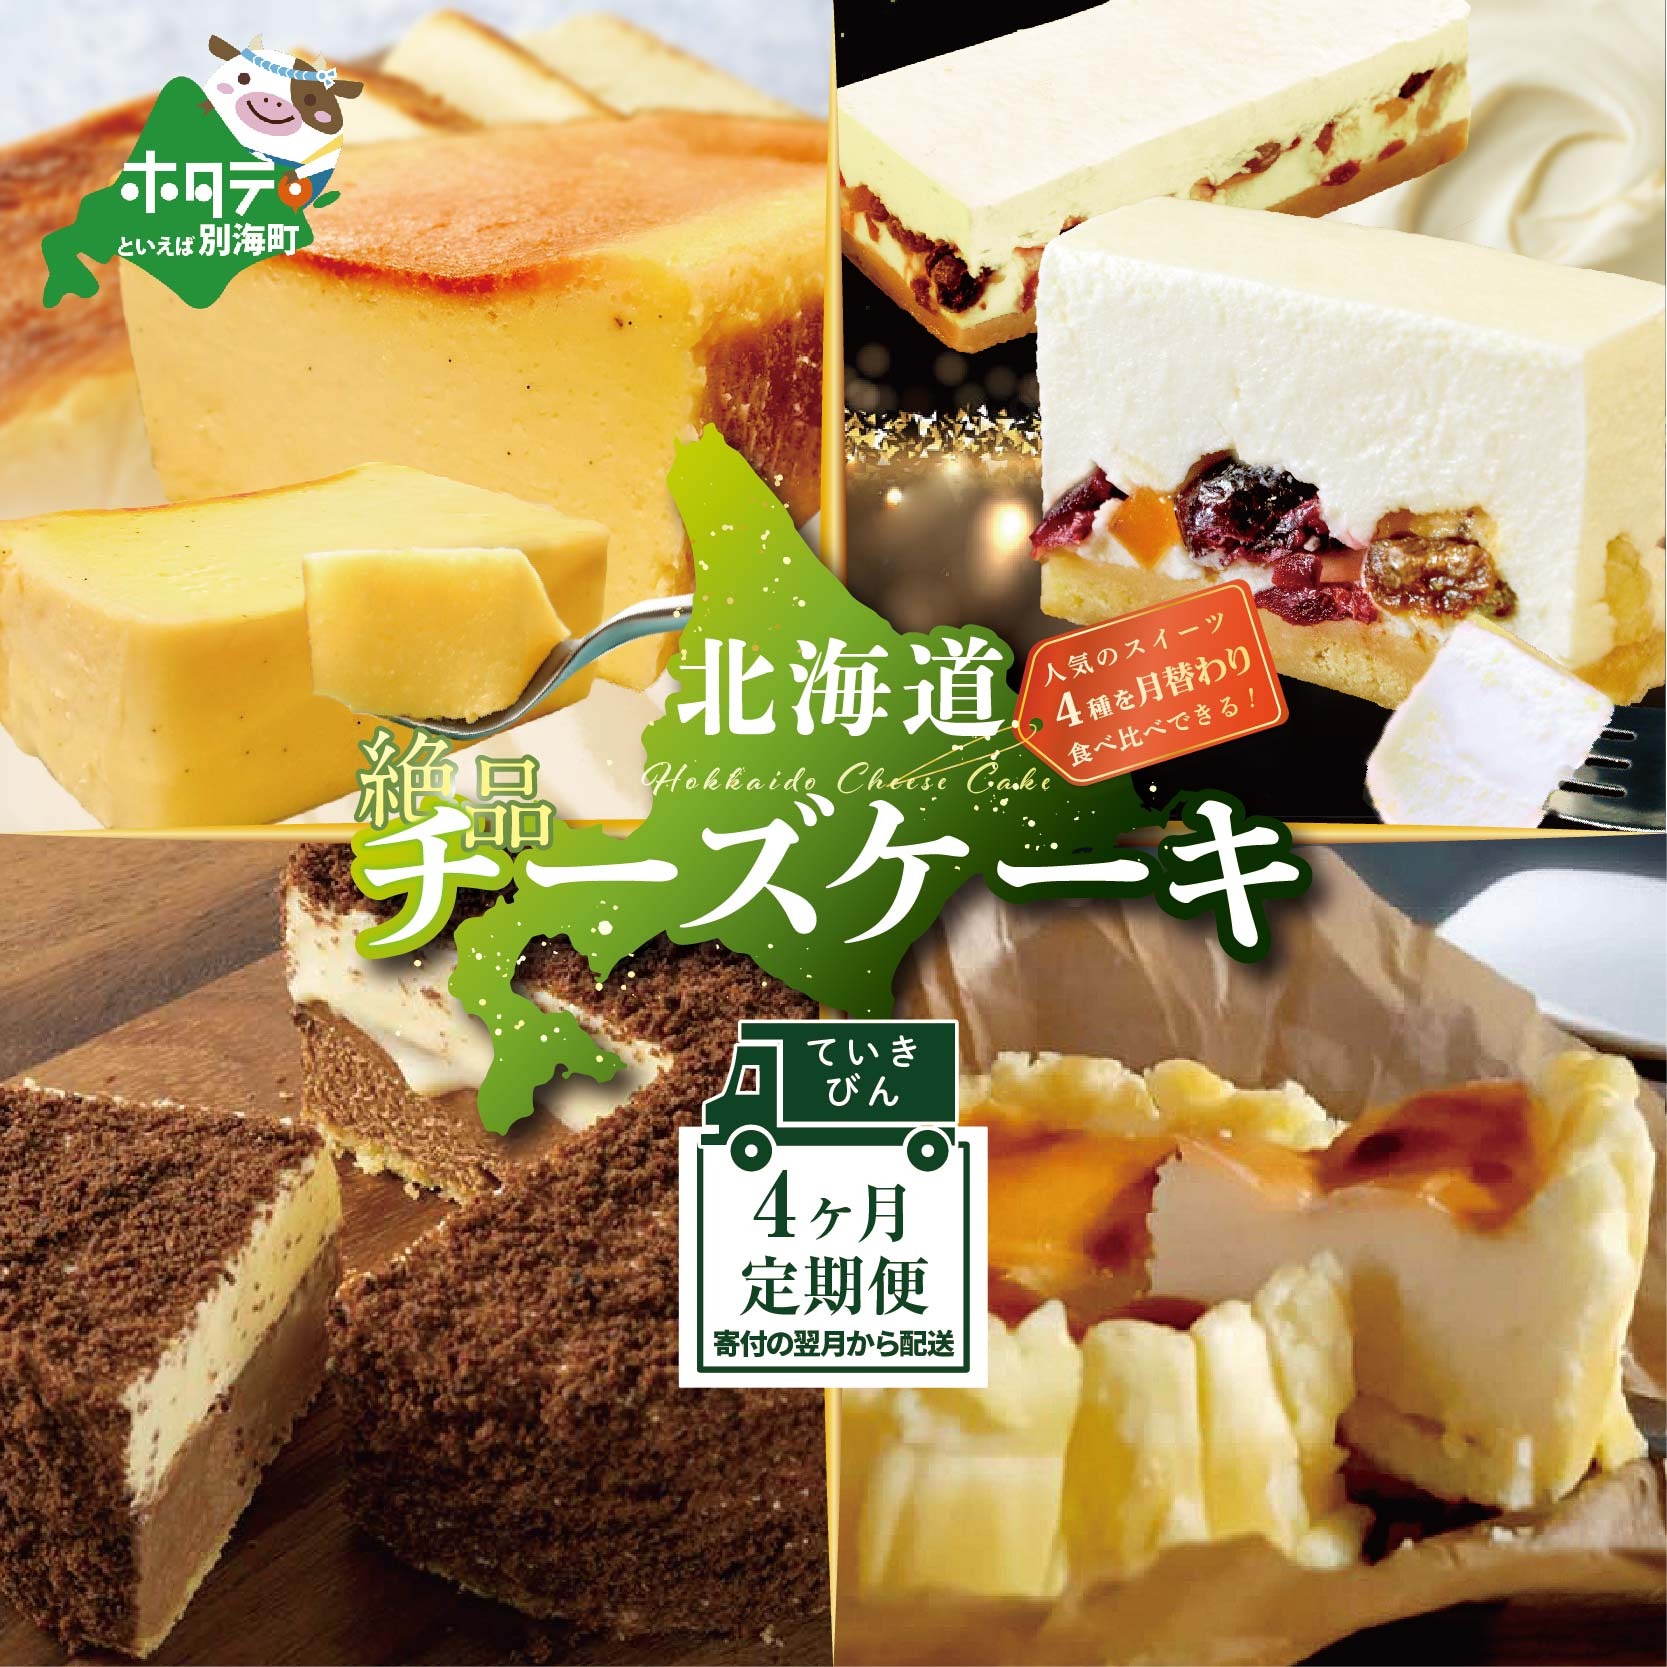 [定期便]食べ比べ「 北海道 絶品 チーズケーキ 4種 第2弾 酪農日本一・別海町のチーズ使用」 各1種ずつ計4回お届け♪ 寄附の翌月から配送 スイーツ 定期便